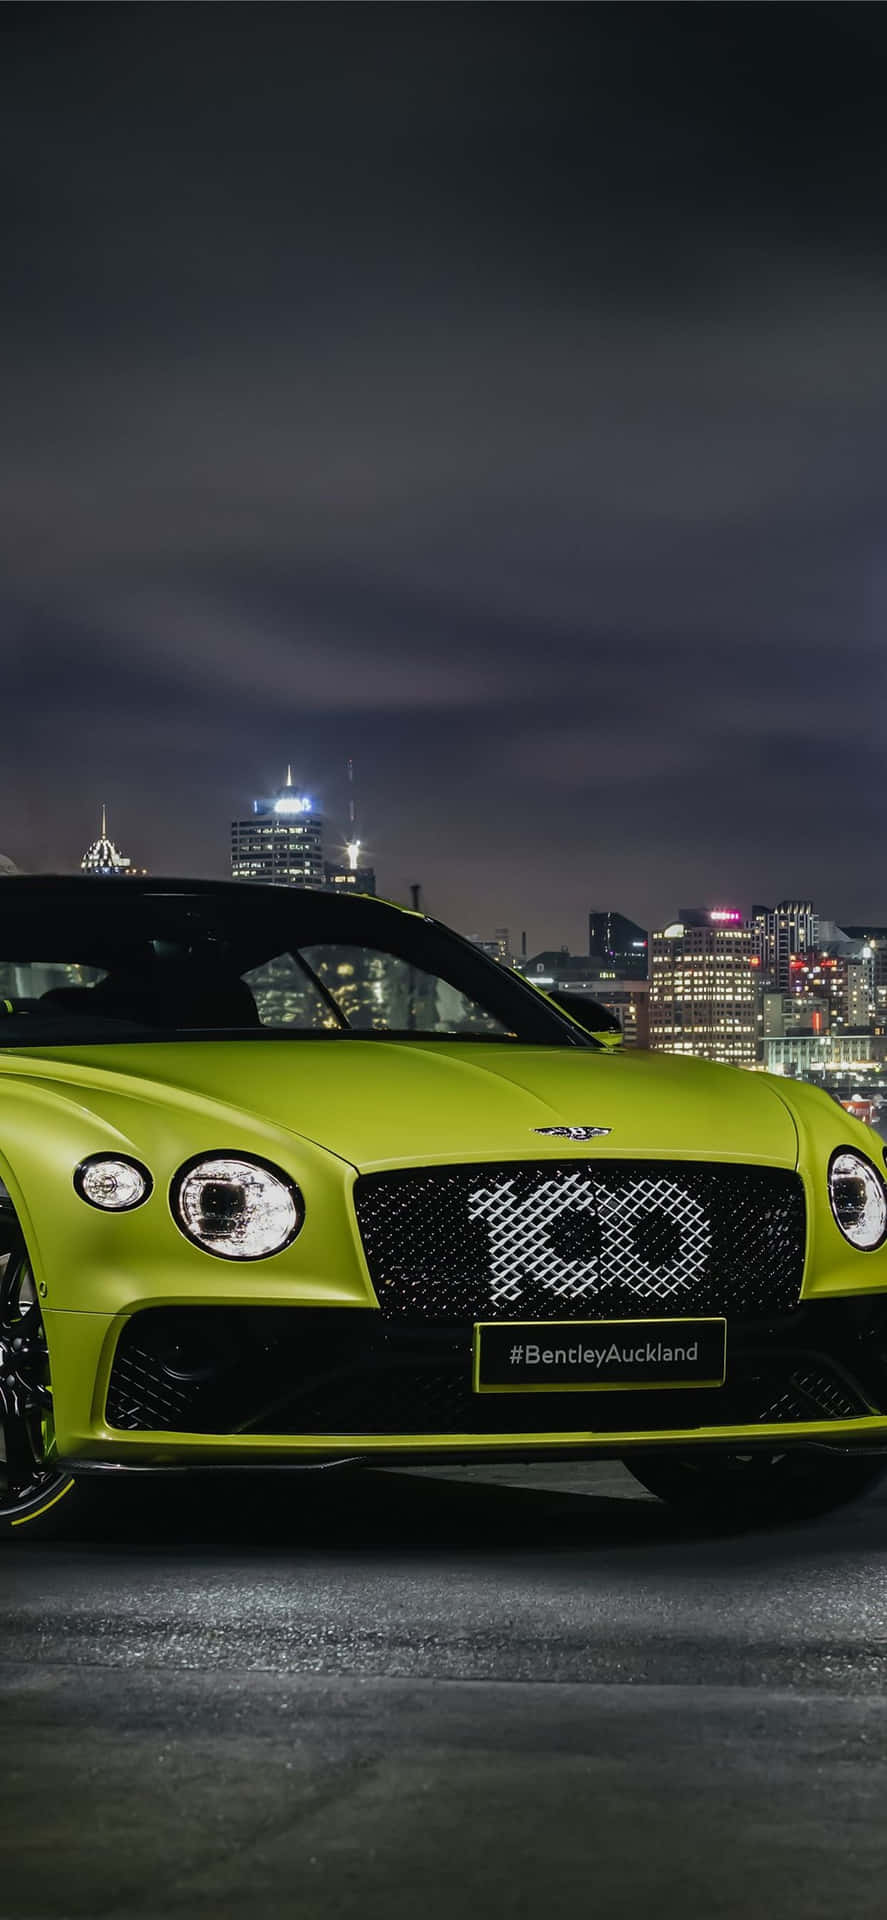 Det klassiske udseende fra Bentley møder den moderne teknologi fra Iphone Xs Max.